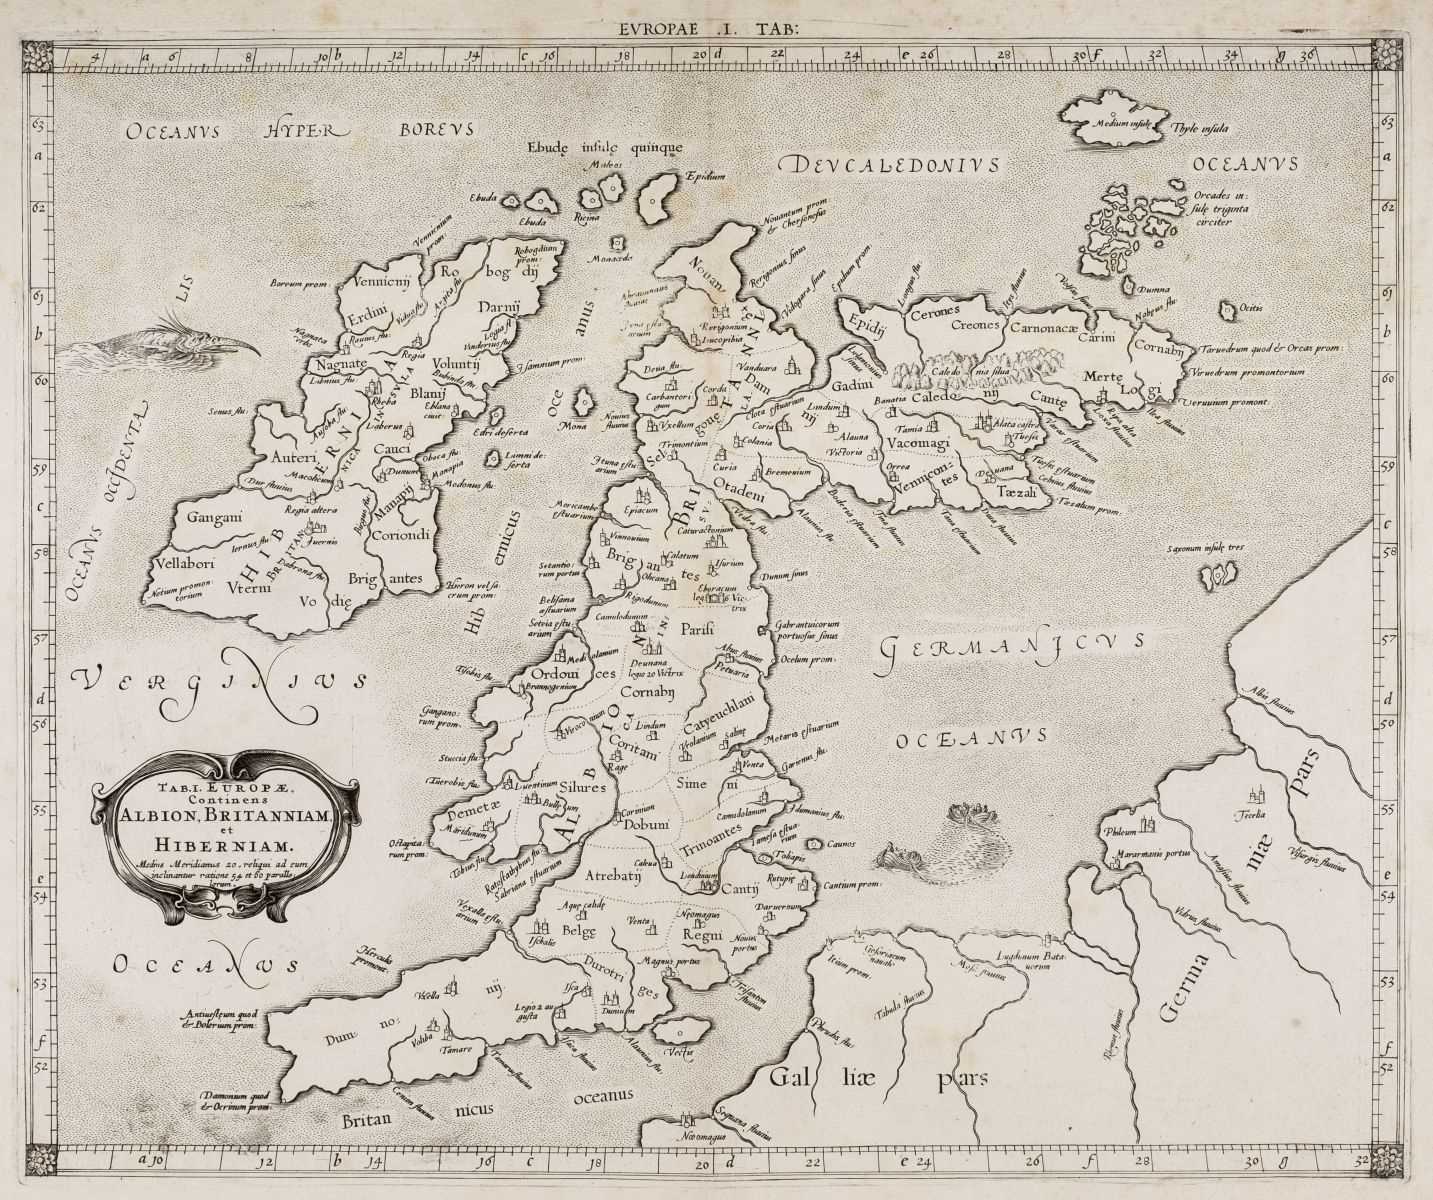 Lot 11 - British Isles. Mercator (Gerard), Tab. I. Europae Continens Albion Britanniam et Hiberniam, 1690